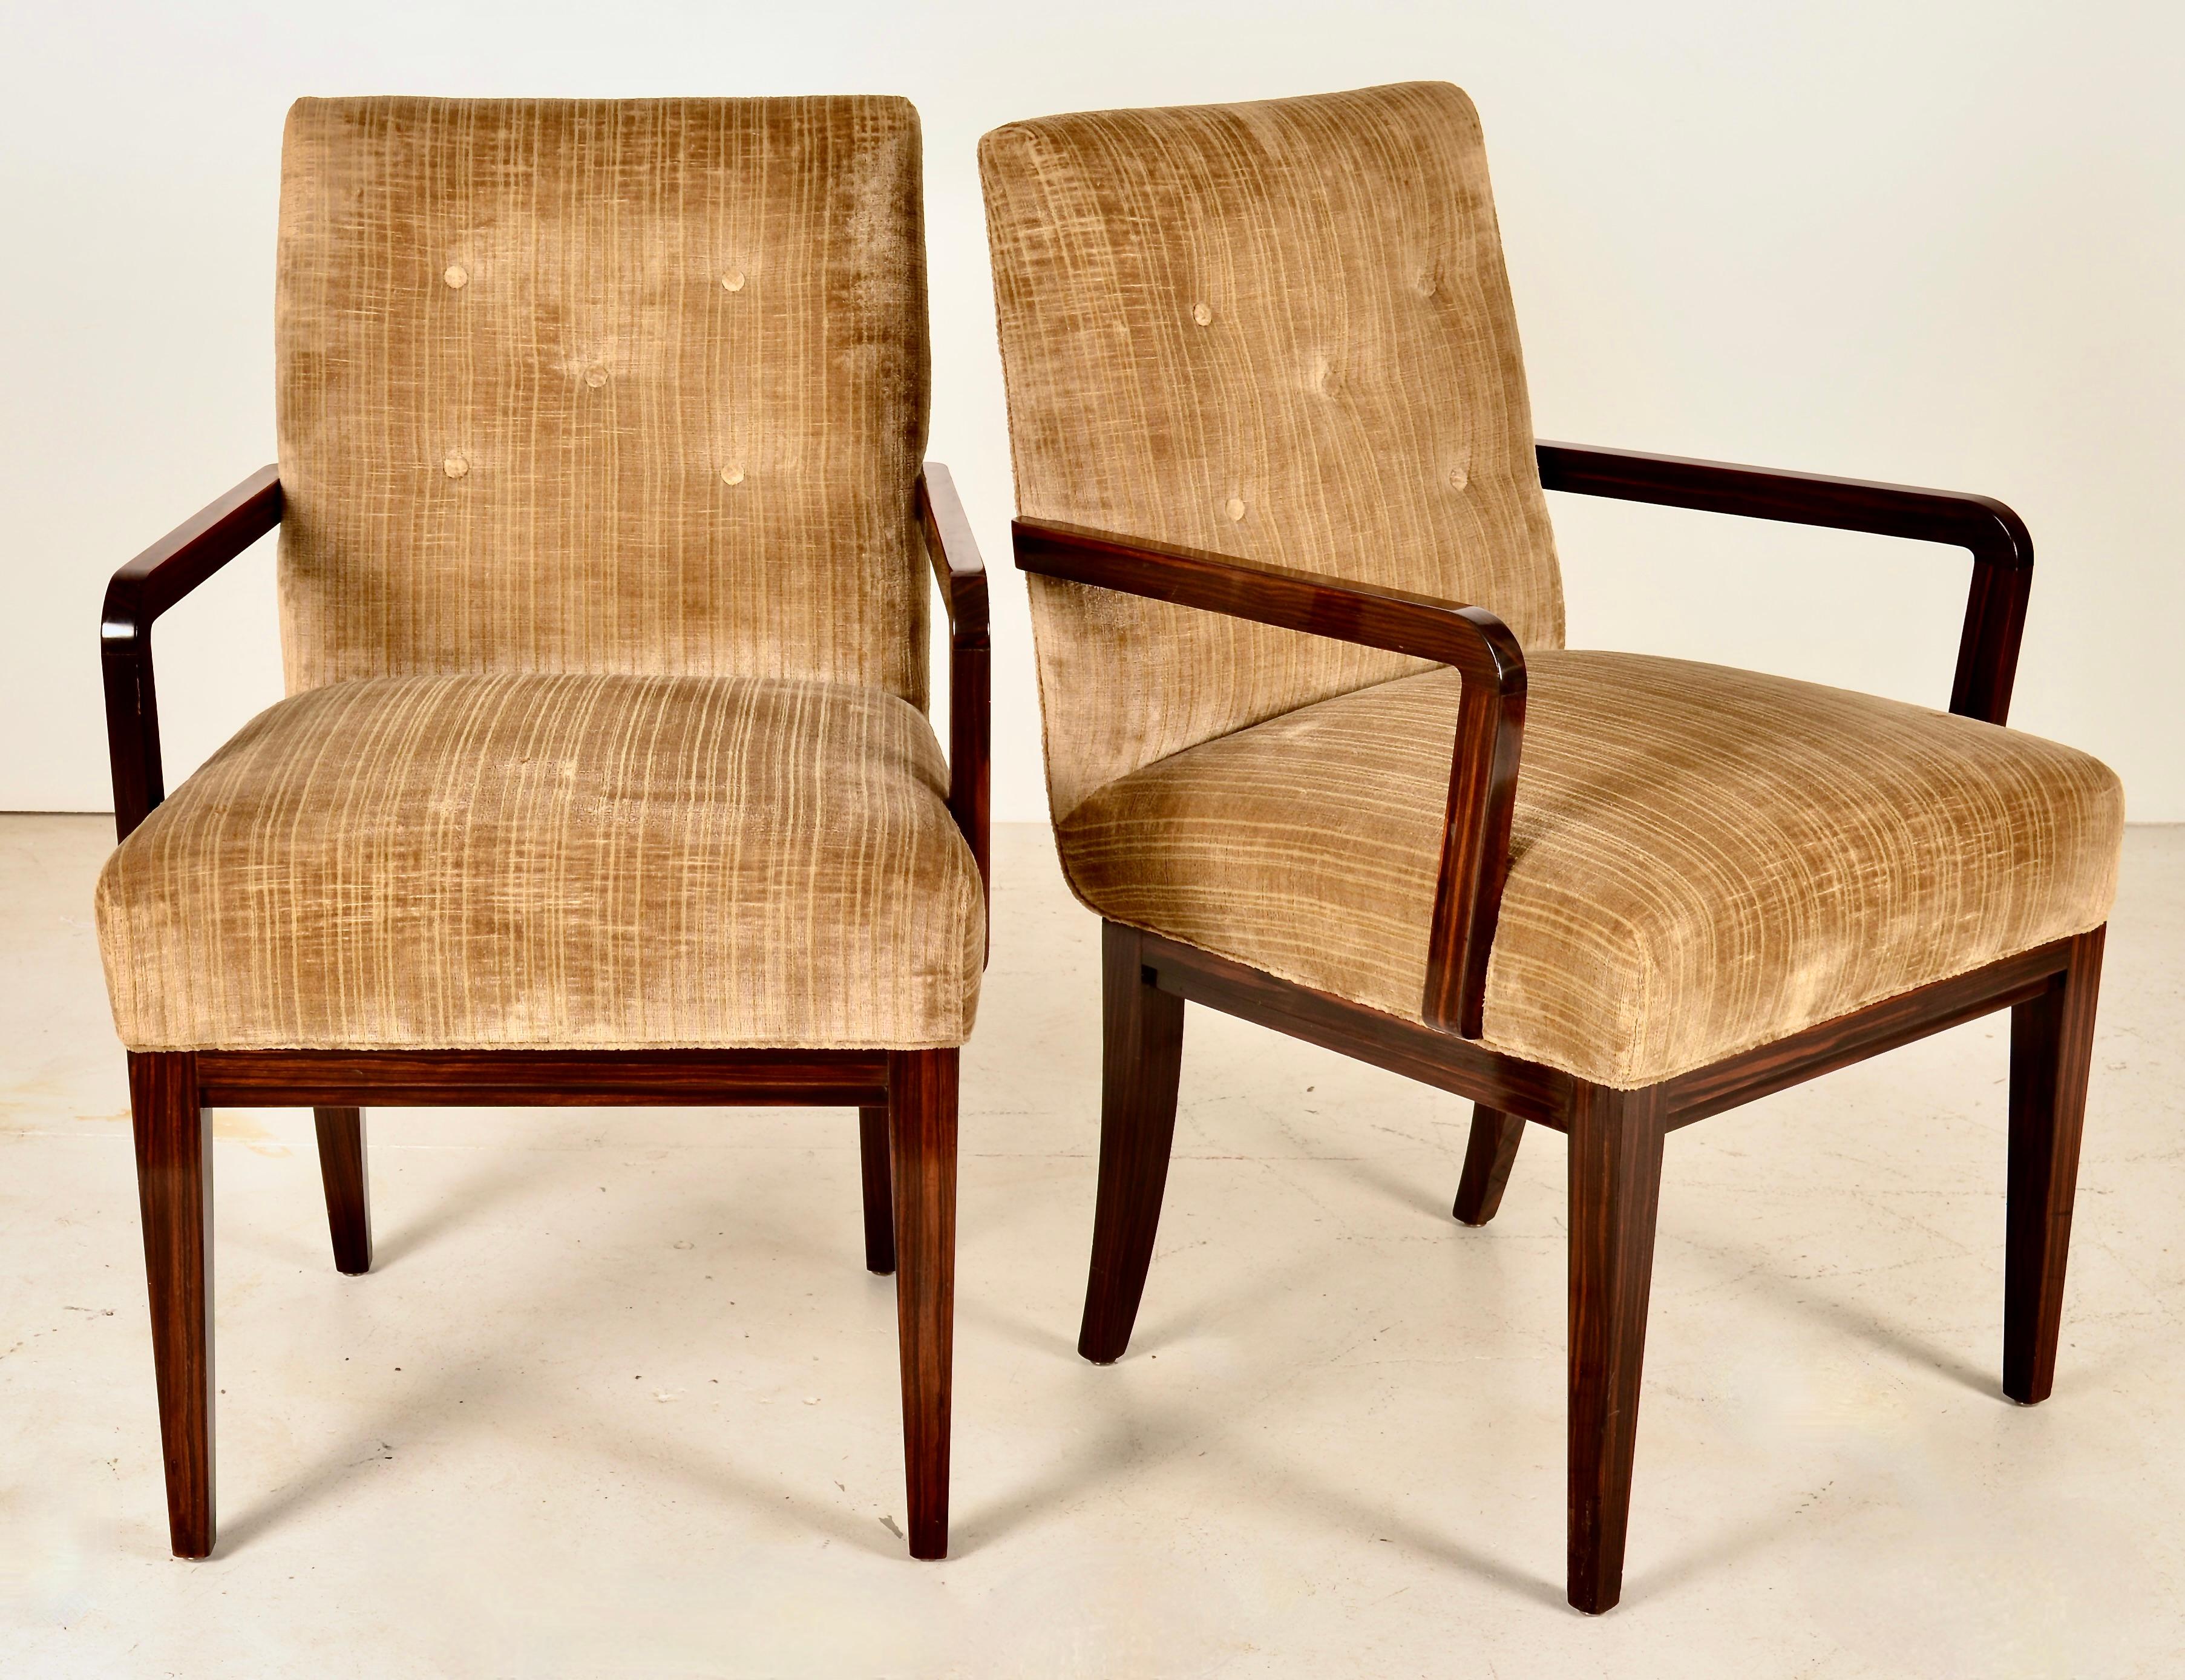 Ces chaises sont fabriquées avec le souci du détail qui a fait la réputation de Schmieg et Kotzian. Le bois exotique zébré a une finition riche et brillante. Les pieds se rétrécissent légèrement et les pieds arrière ont une forme de sabre. Les